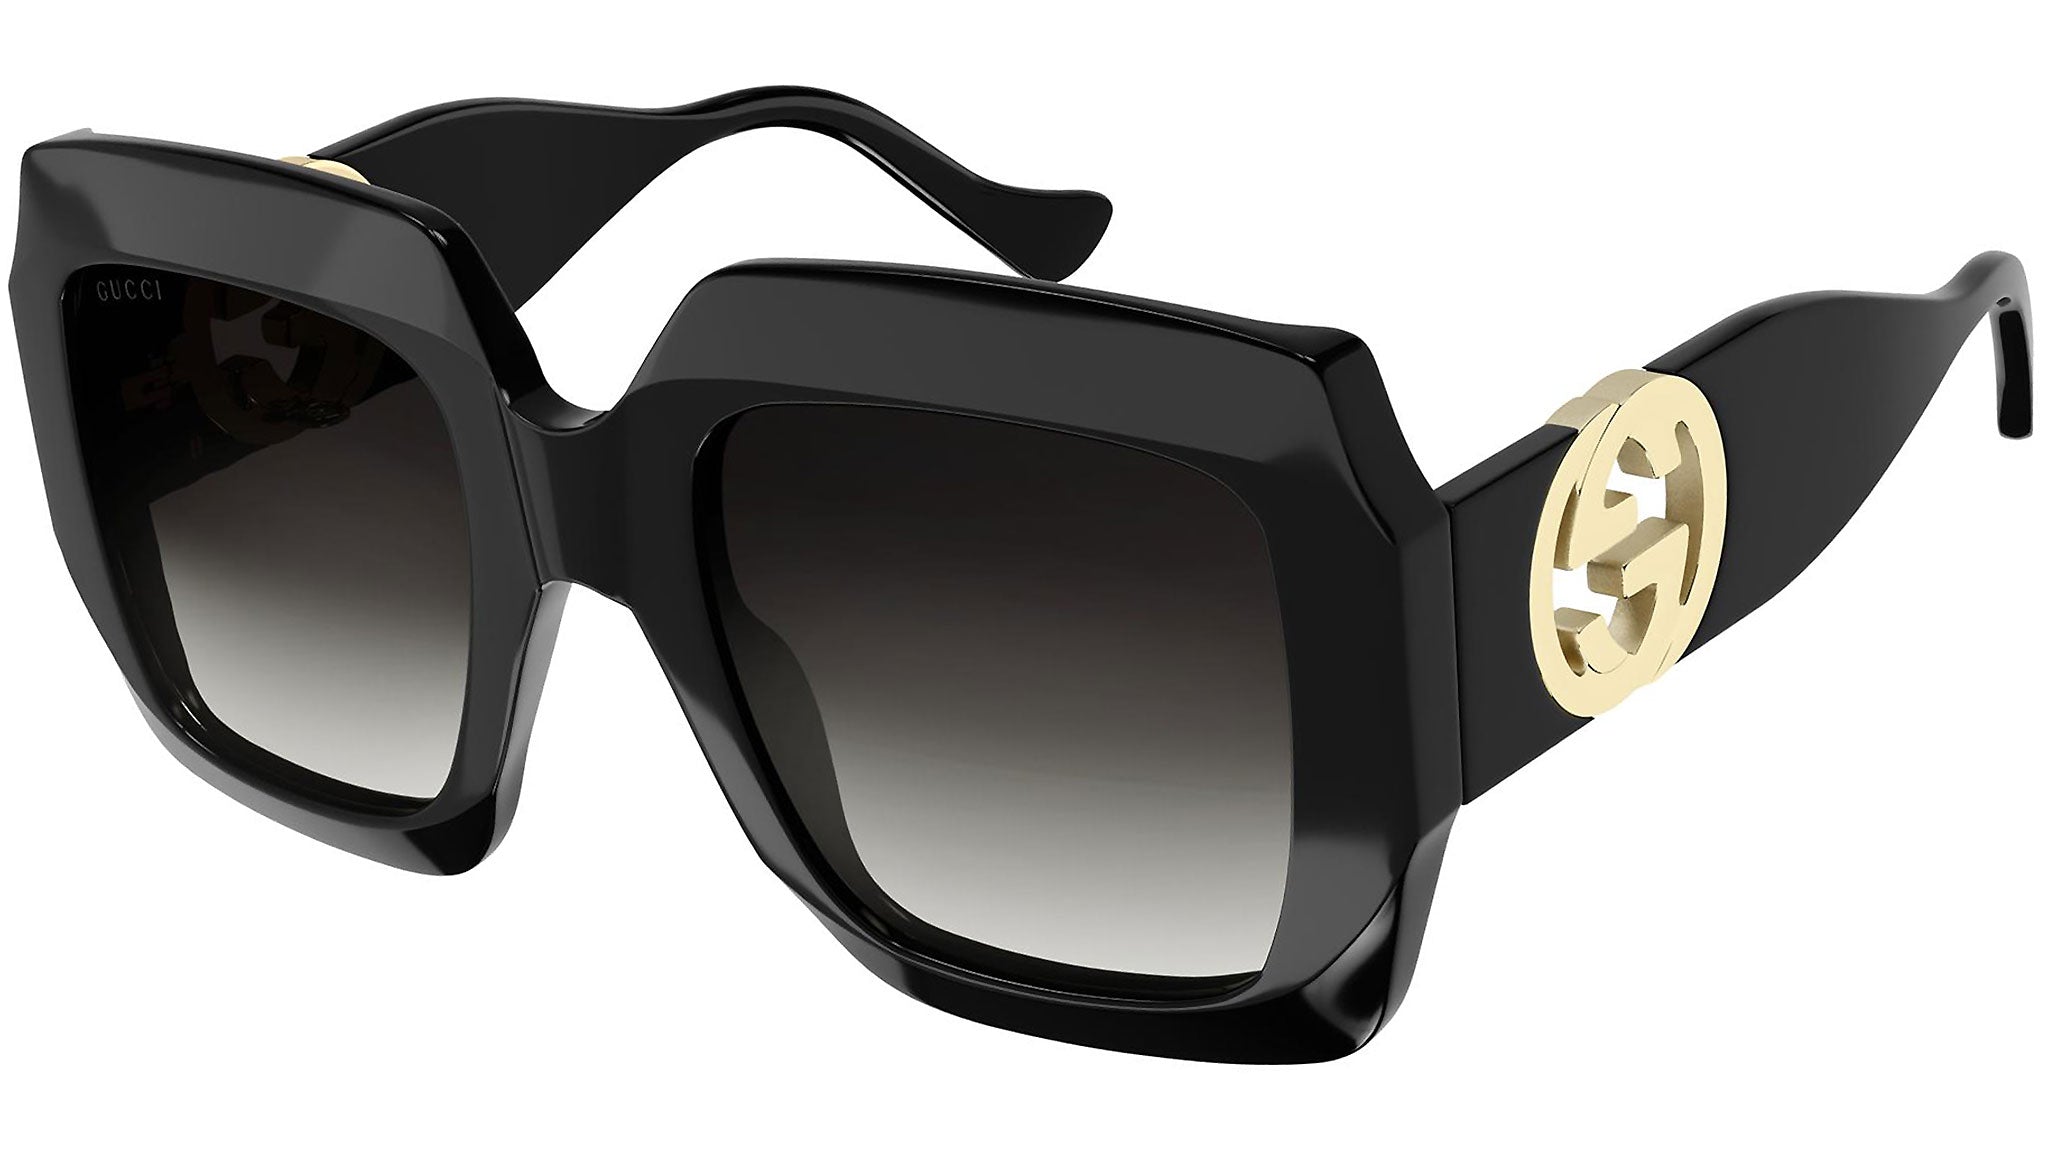 270 Sunglasses ideas  sunglasses, sunglasses women, glasses fashion